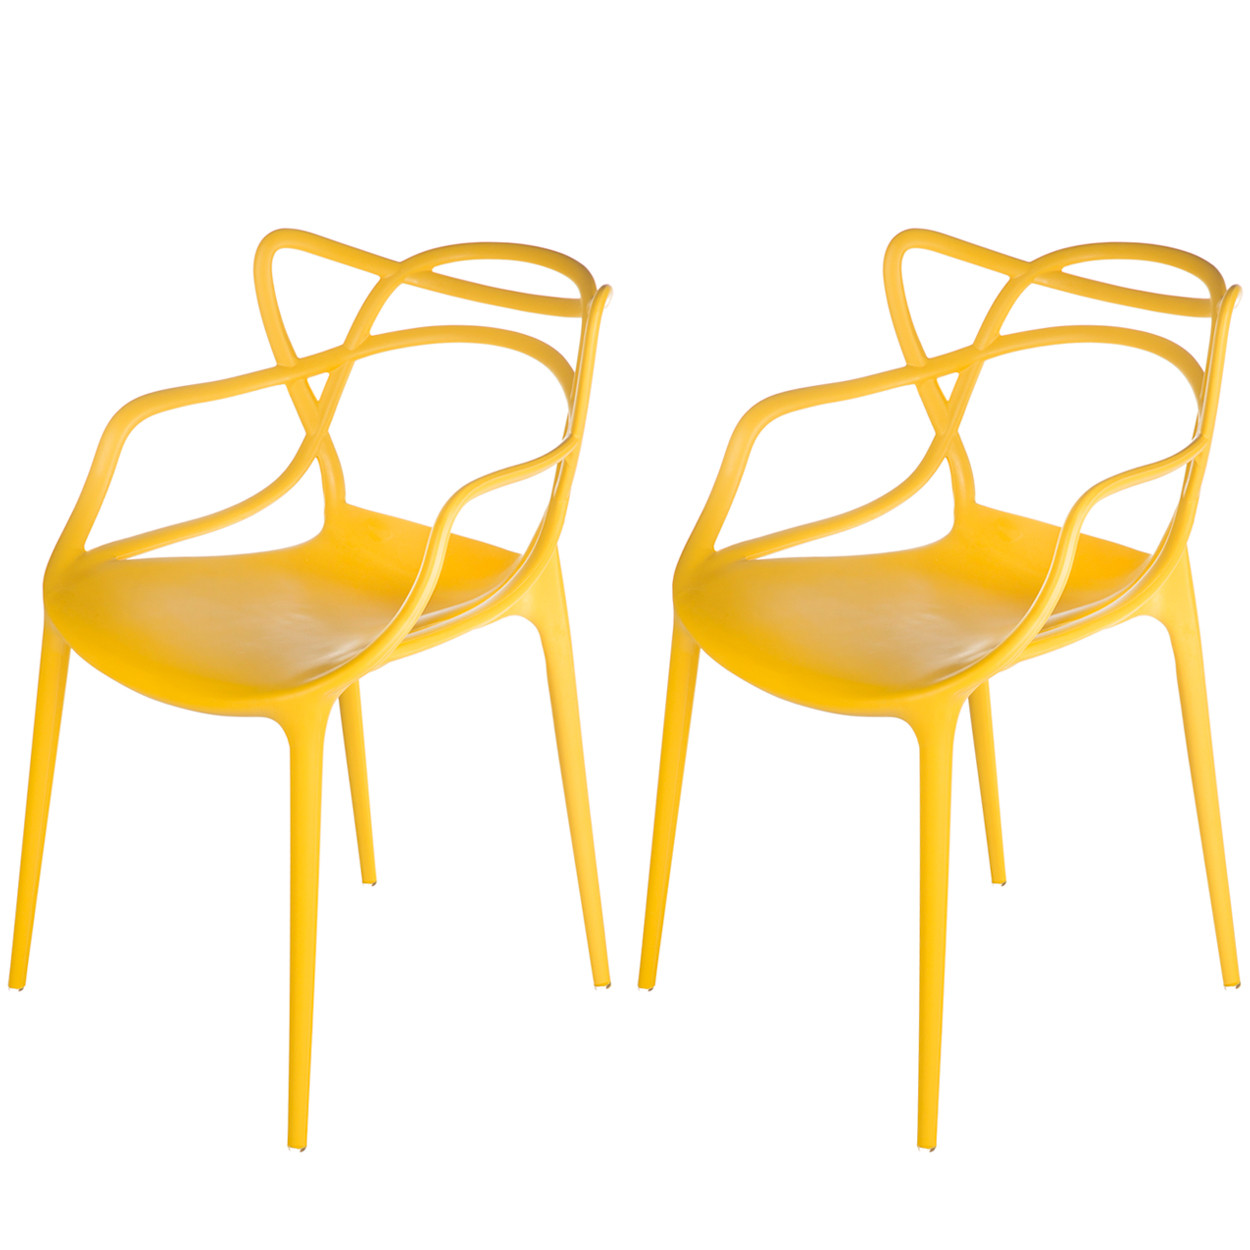 Kit 2 Cadeiras Allegra Cozinha de Polipropileno 173 DPP Cor:Amarelo